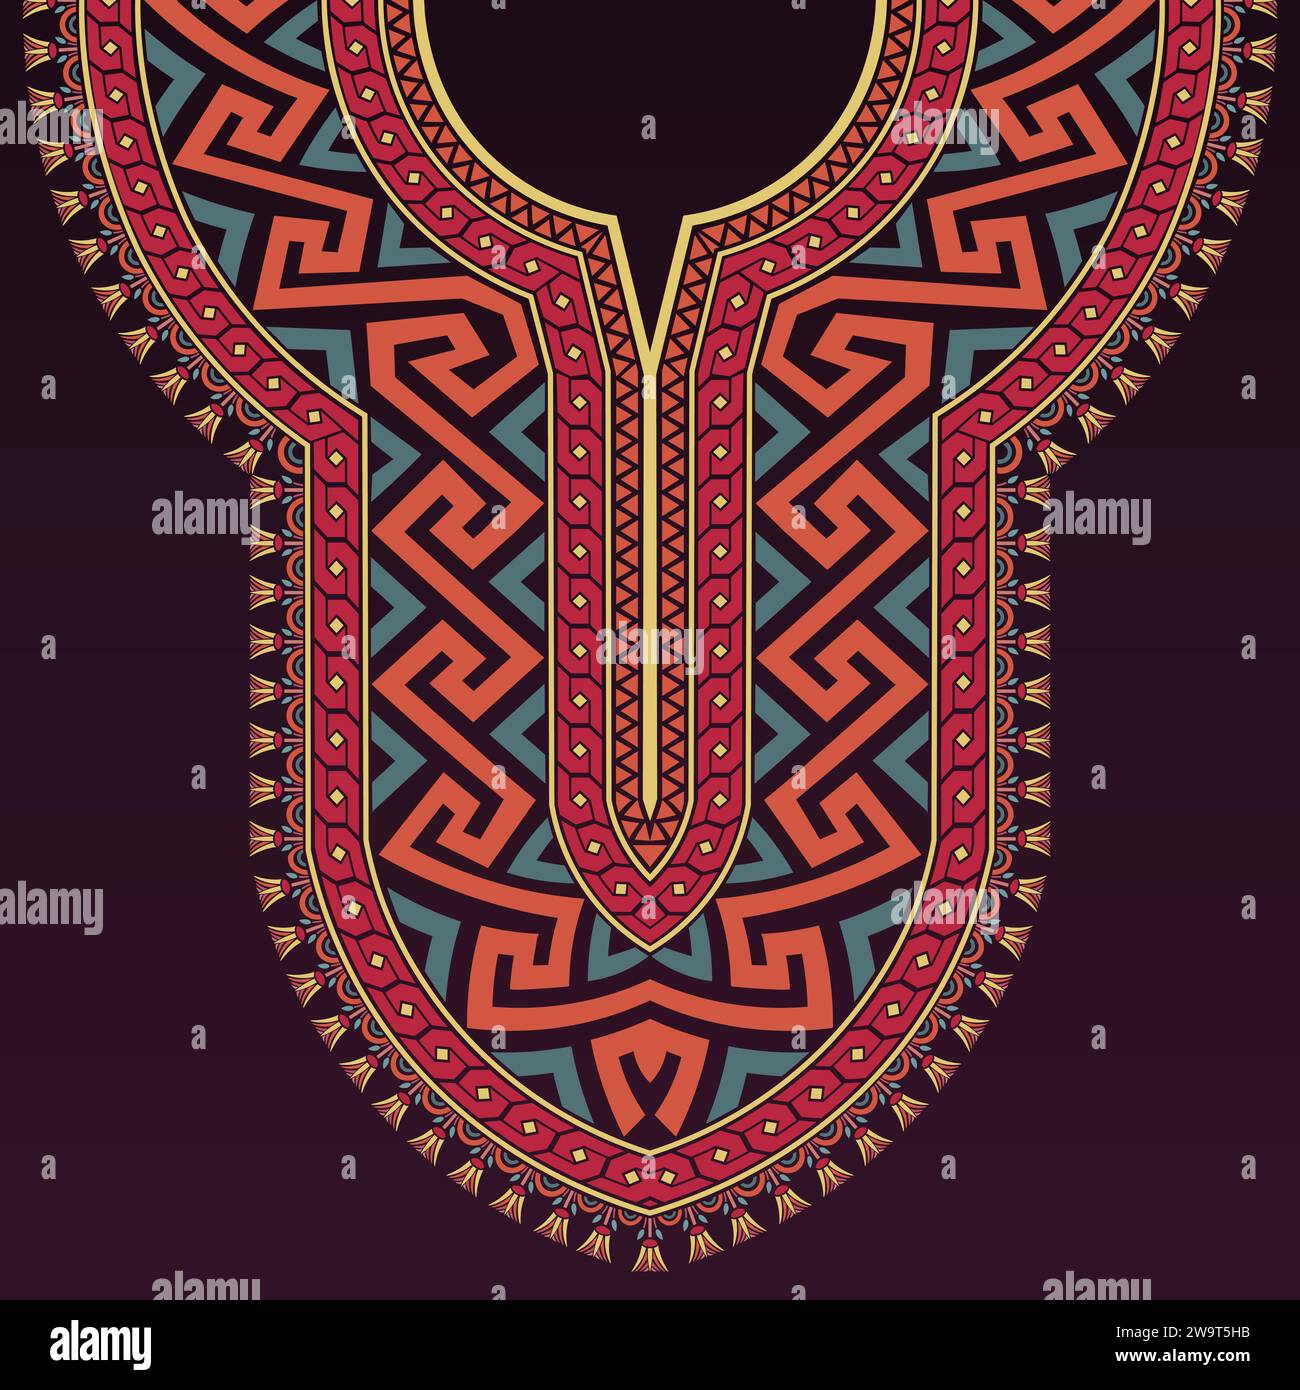 Farbenfrohes Halsdesign im antiken griechischen Stil mit griechischen Schlüssel-, geometrischen und ägyptischen Lotusmustern auf dunklem lila Hintergrund. Stock Vektor